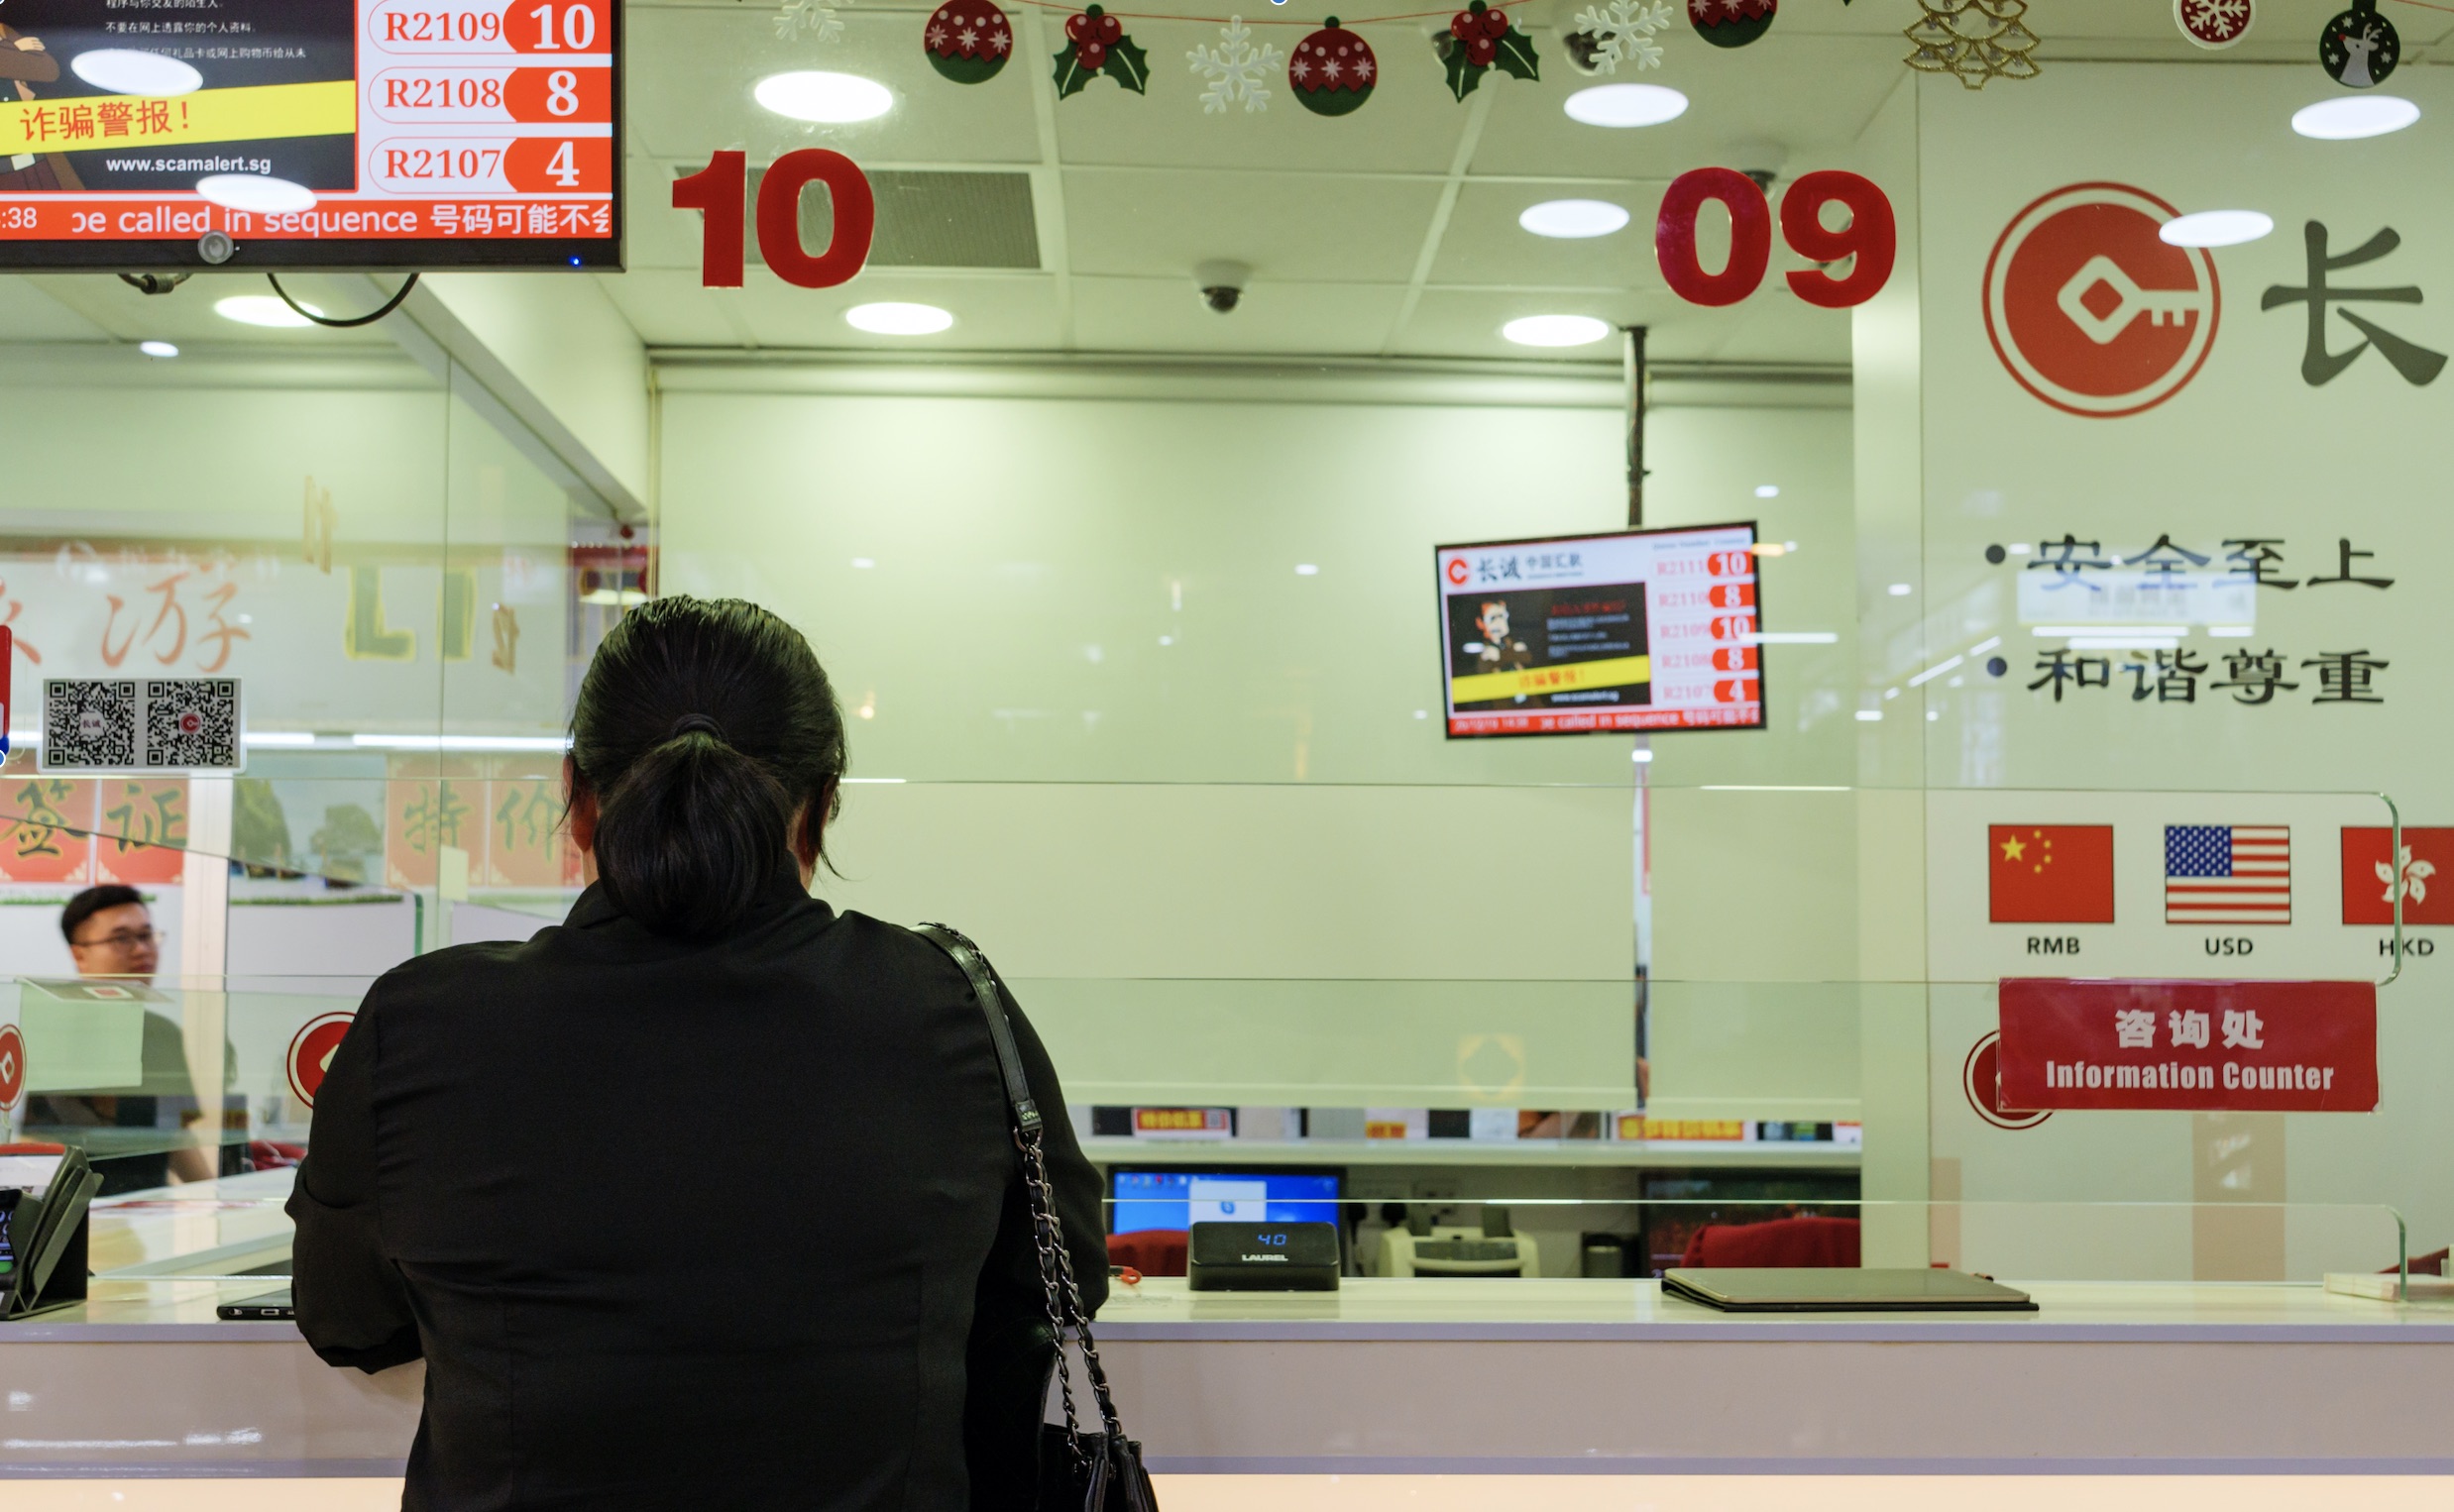 Woman at kiosk doing international banking transaction